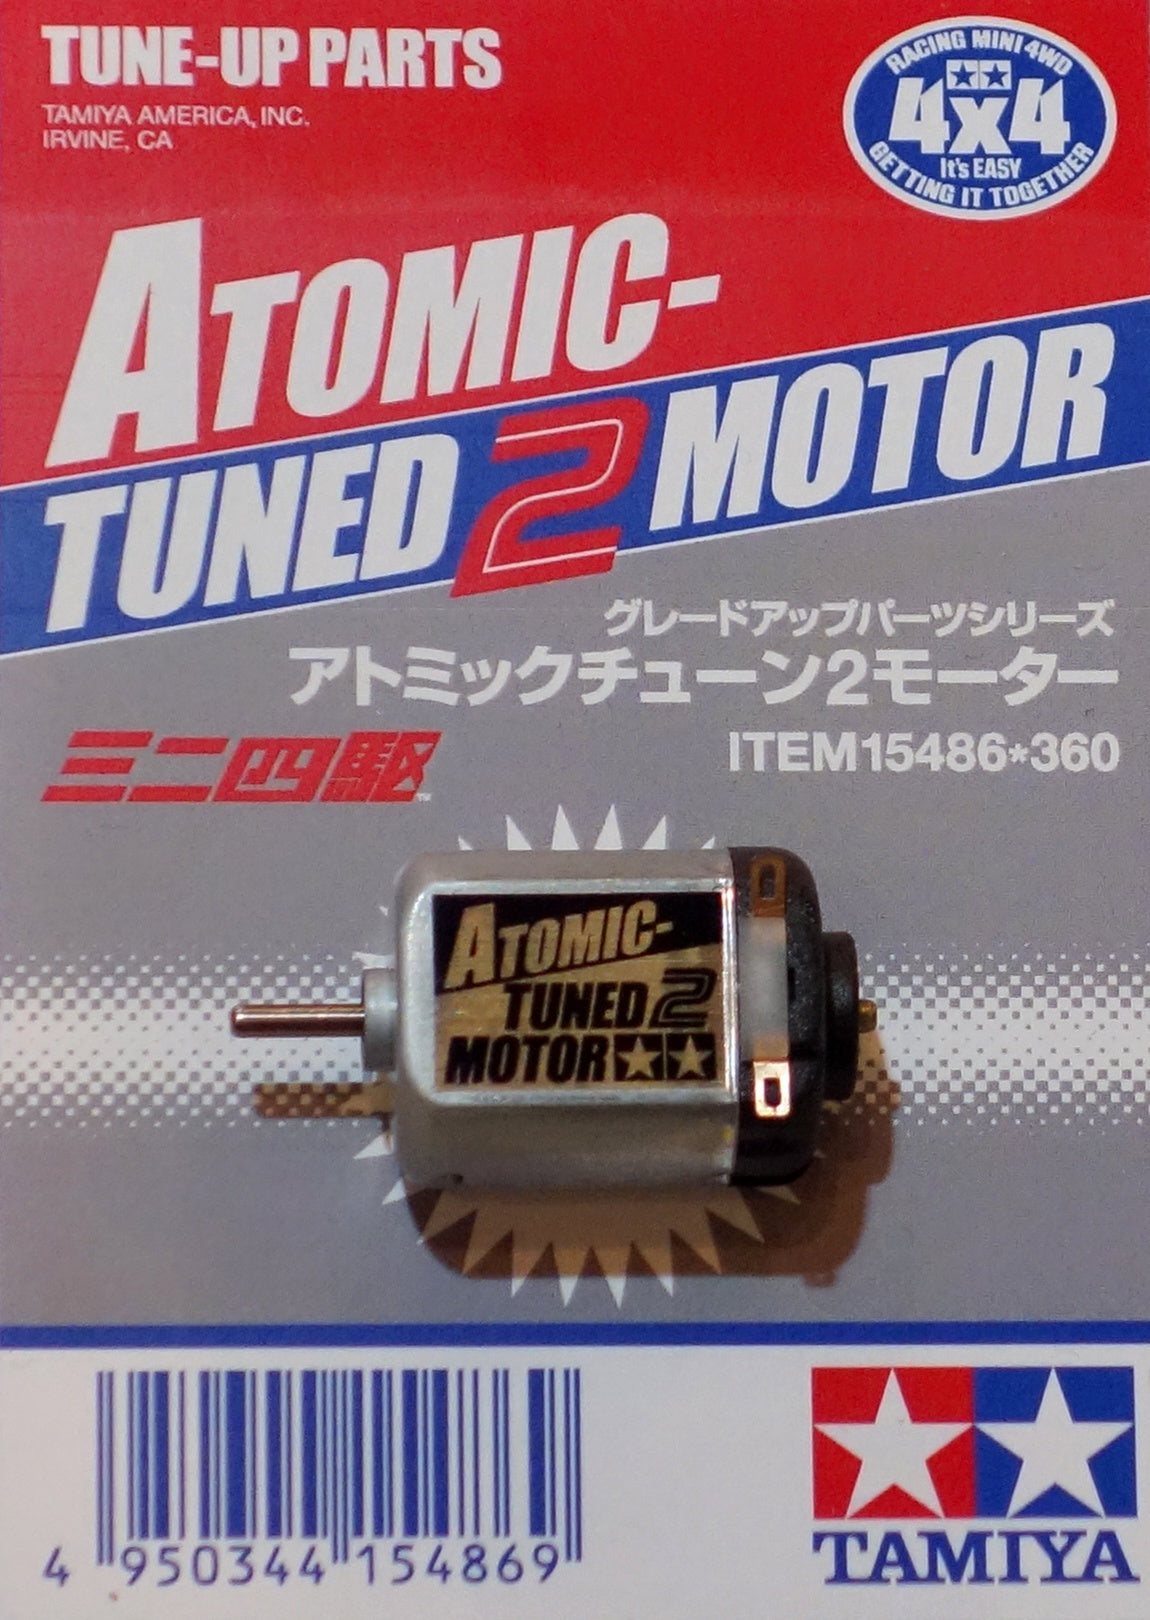 Tamiya 1/32 MINI 4WD GP.486 Atomic-Tuned 2 Motor